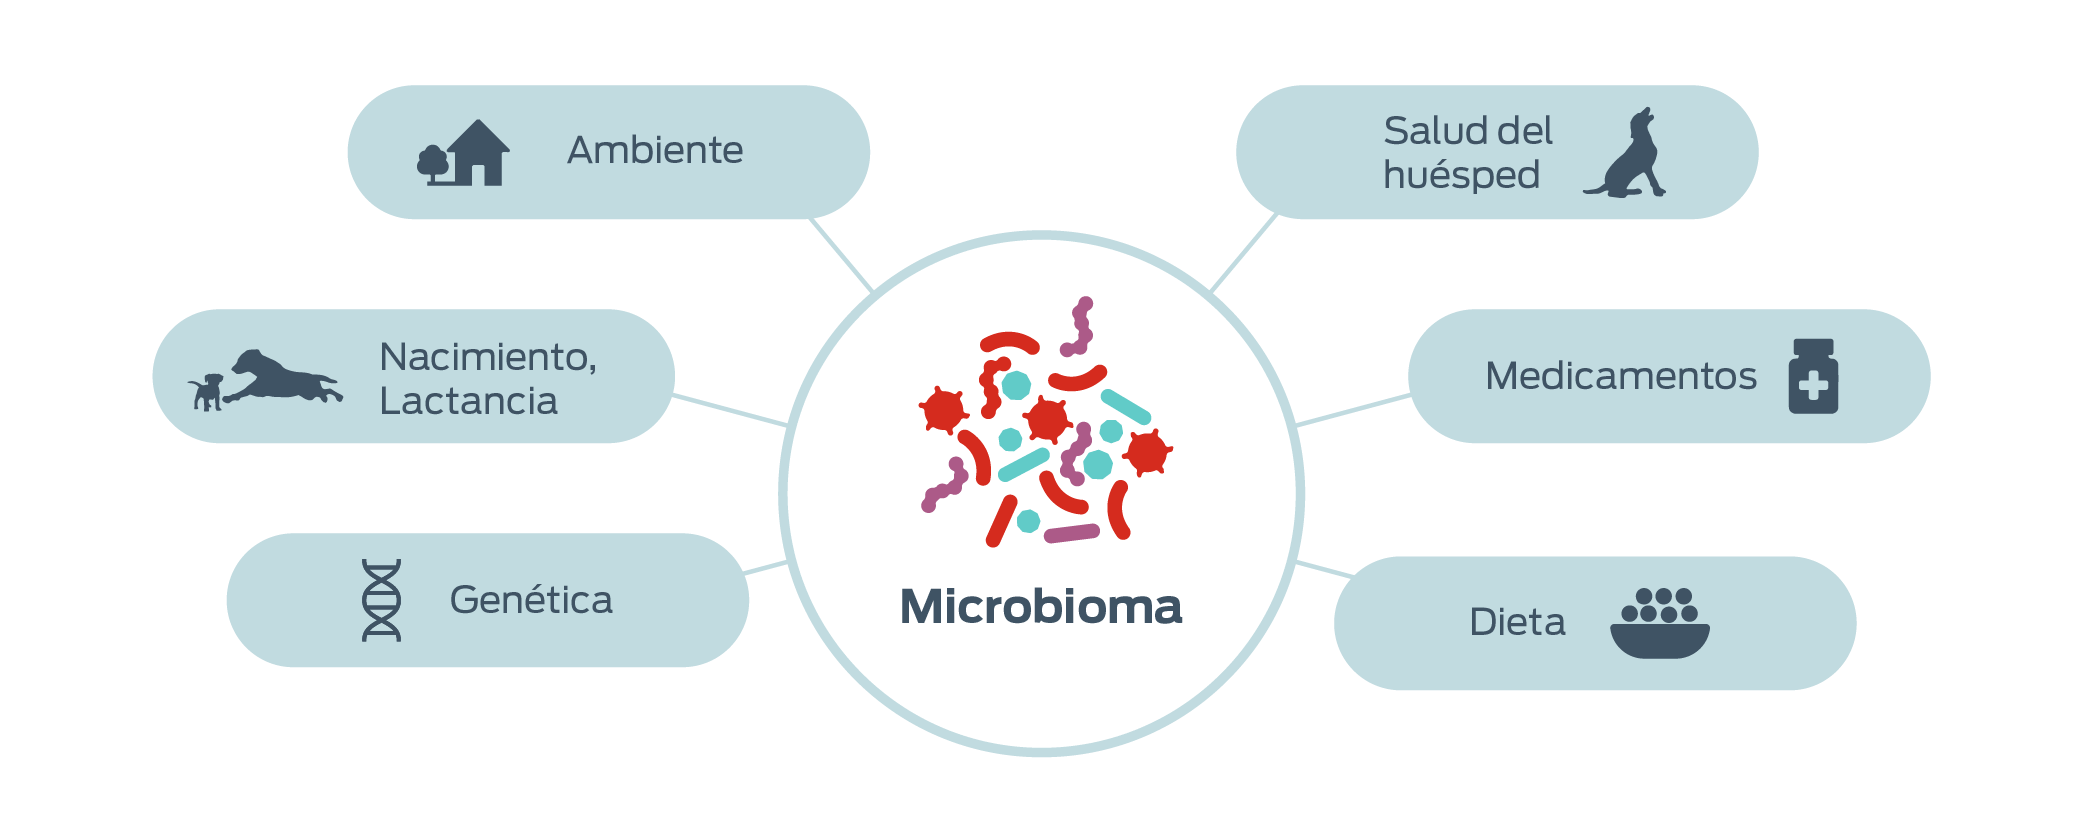 Microbioma. Genética. Nacimiento, lactancia. Ambiente. Salud del huésped. Medicamentos. Dieta